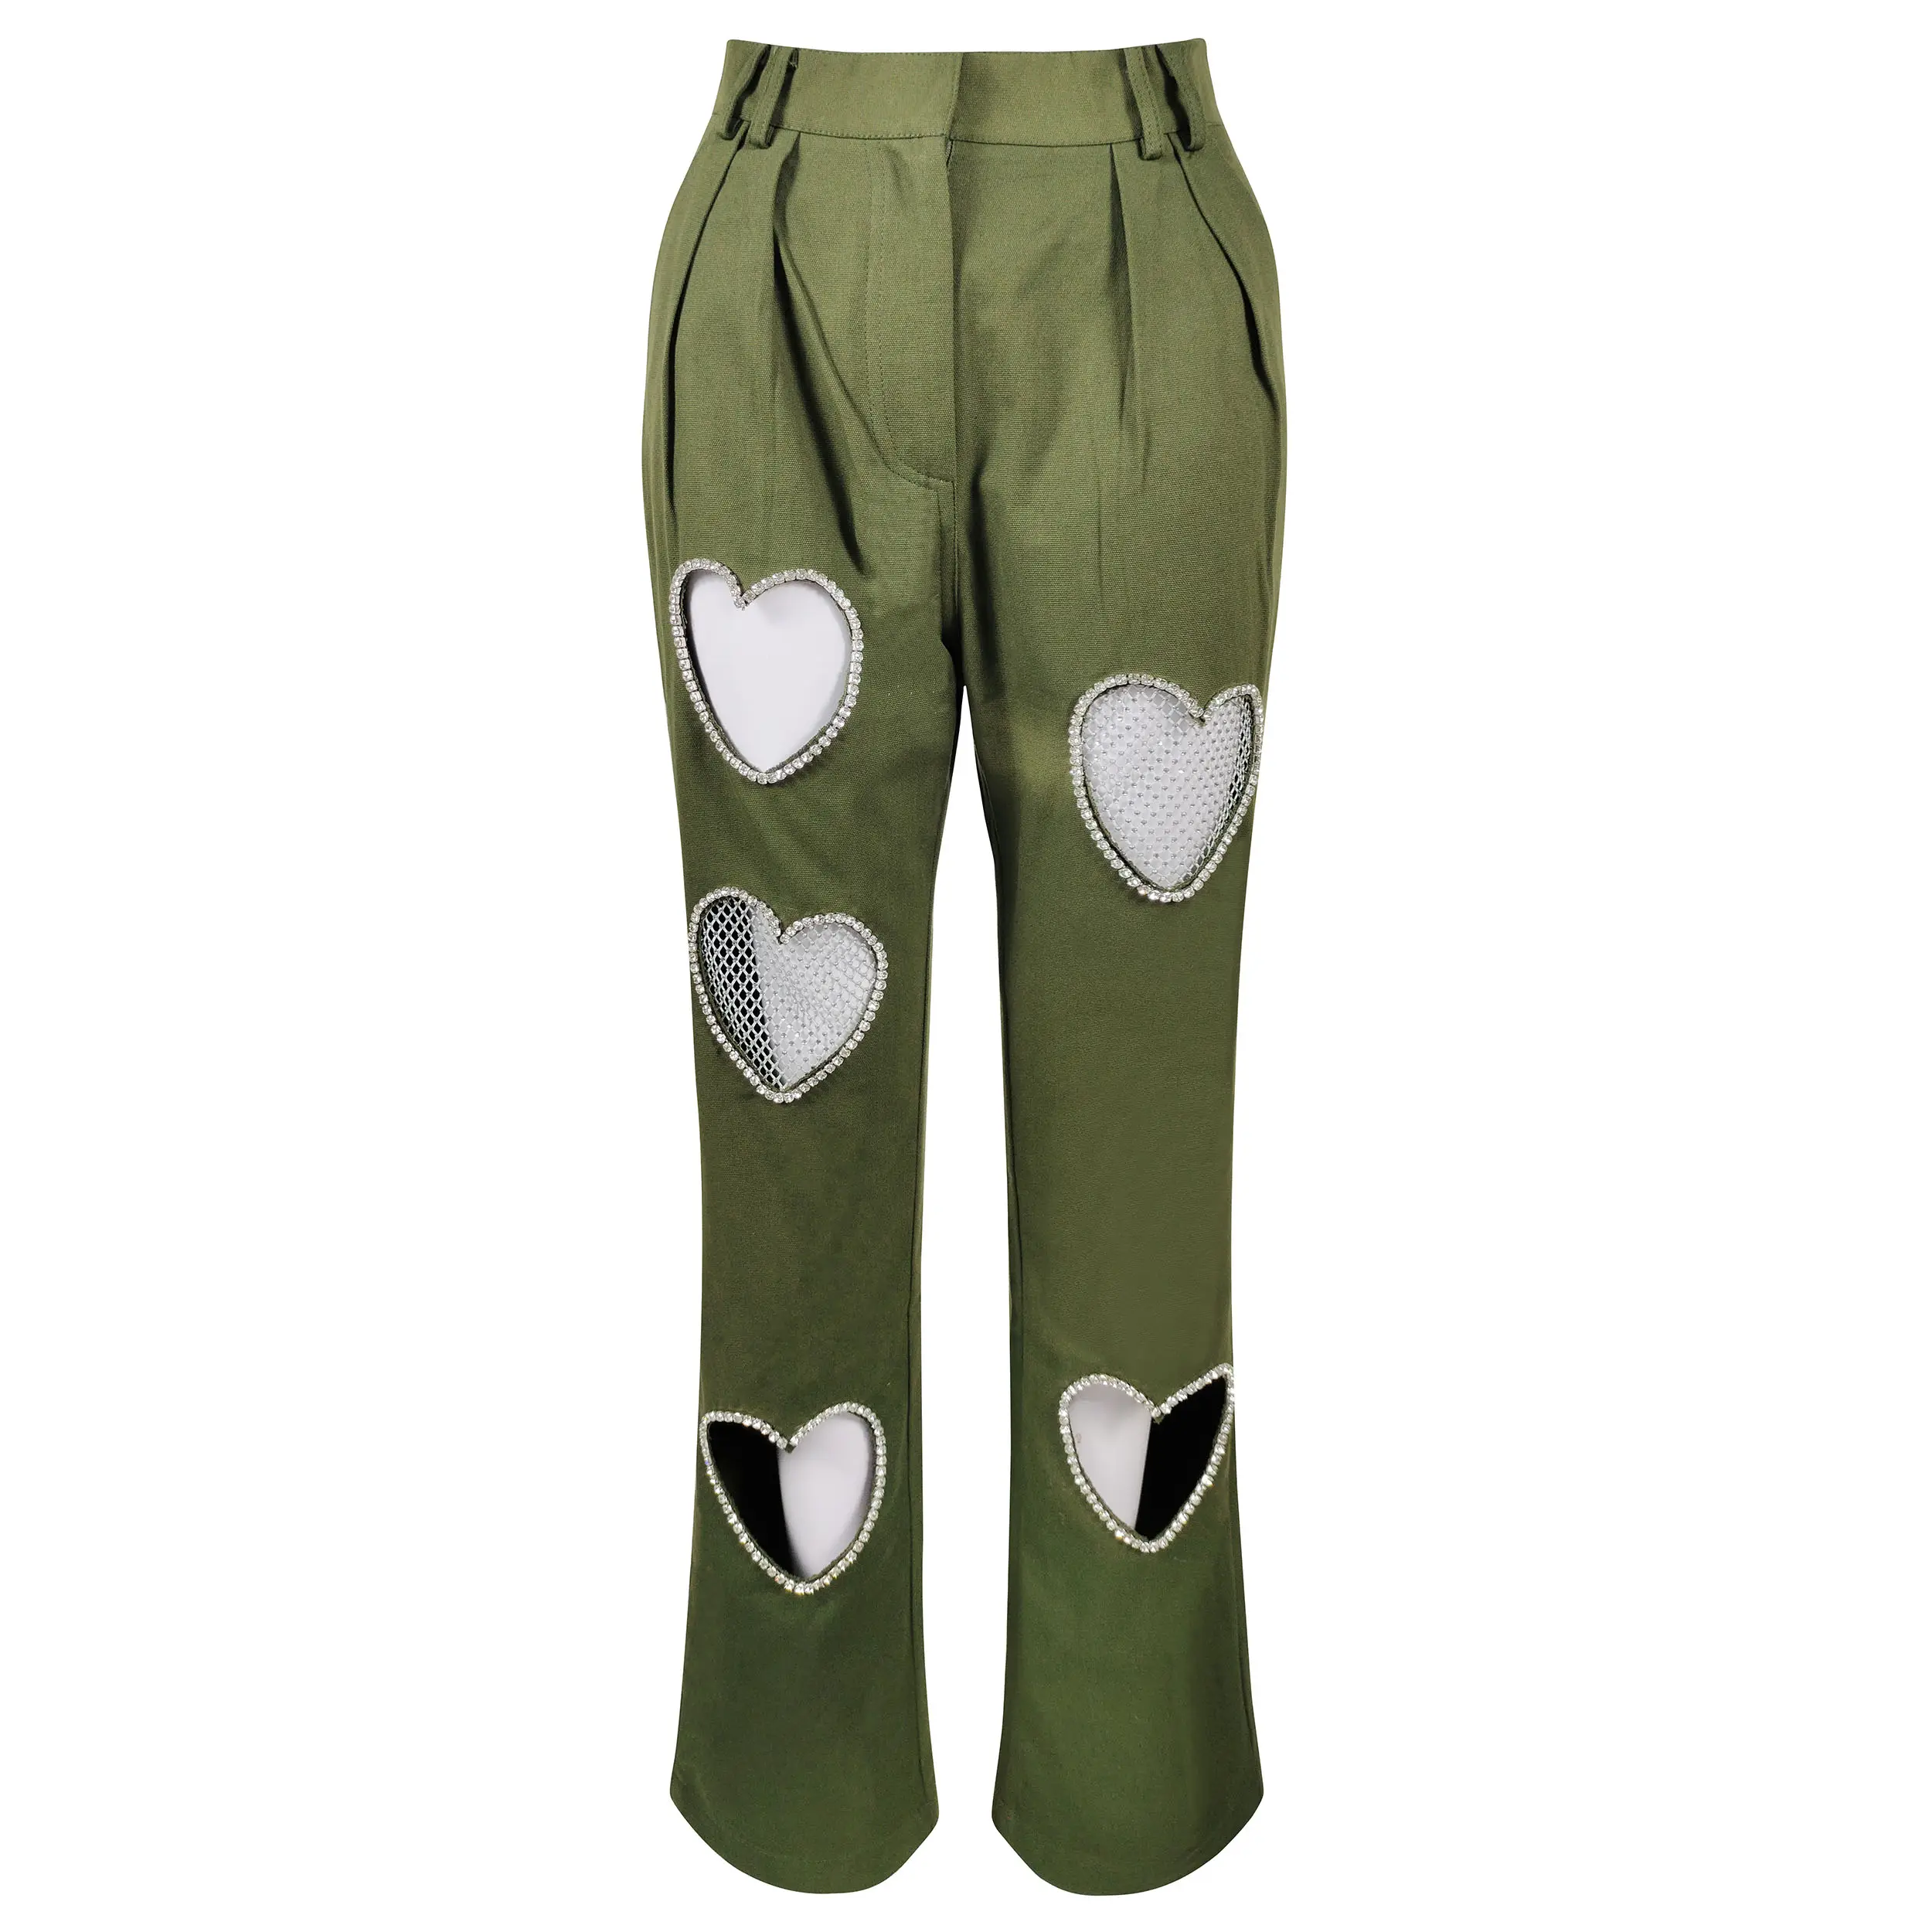 Amigogarment กางเกงขายาวแฟชั่น A7681สีเขียวสดใสมีสไตล์กางเกงขายาวสำหรับสุภาพสตรีแบบคัตเอาท์ประดับด้วยลูกปัดขนาดใหญ่พิเศษ